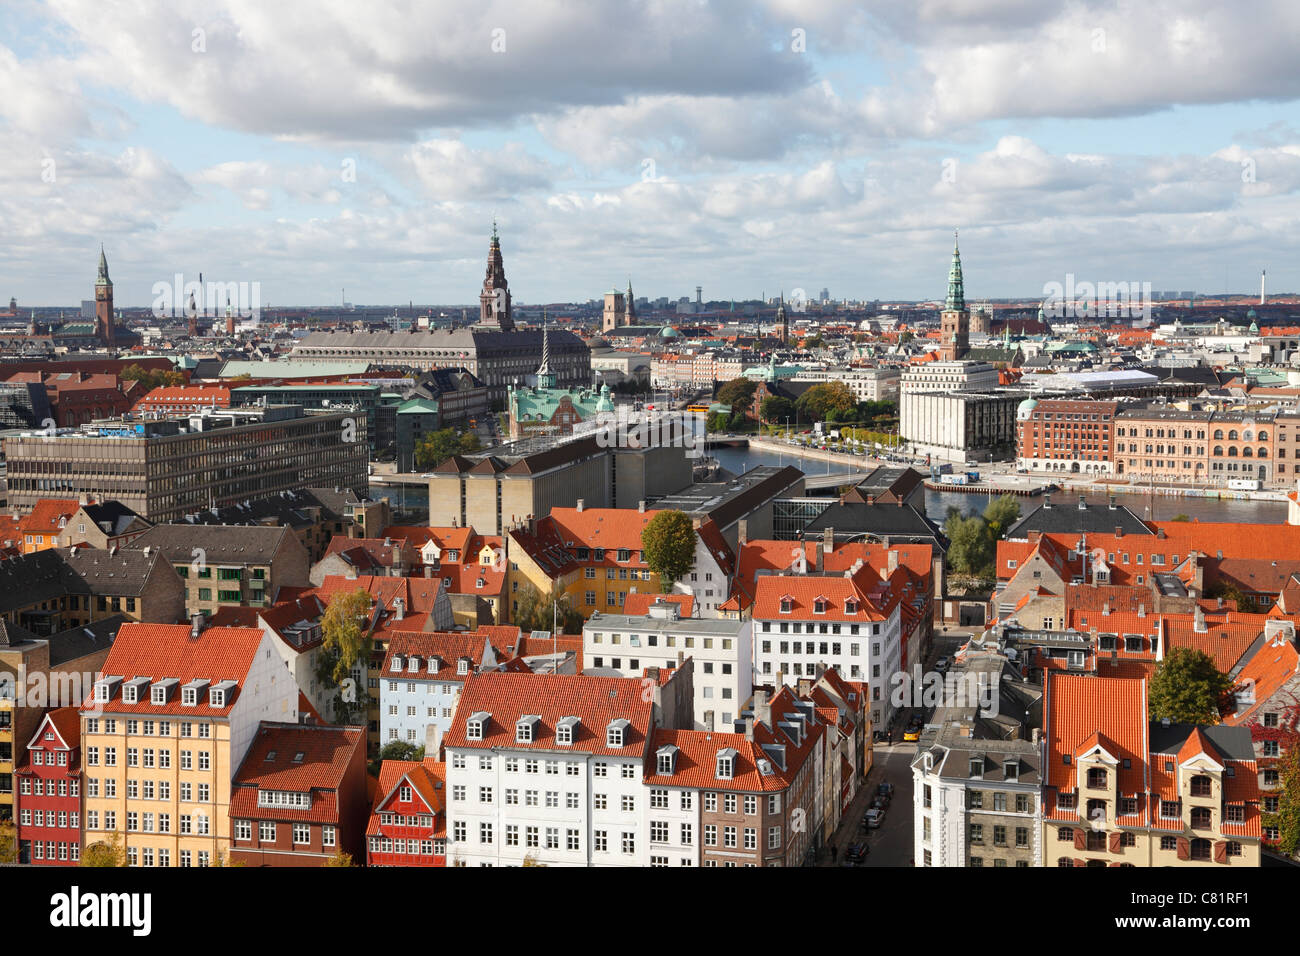 Veduta aerea sui tetti della capitale interna di Copenhagen e del quartiere governativo e finanziario. Edificio Del Parlamento Del Castello Di Christiansborg. Foto Stock